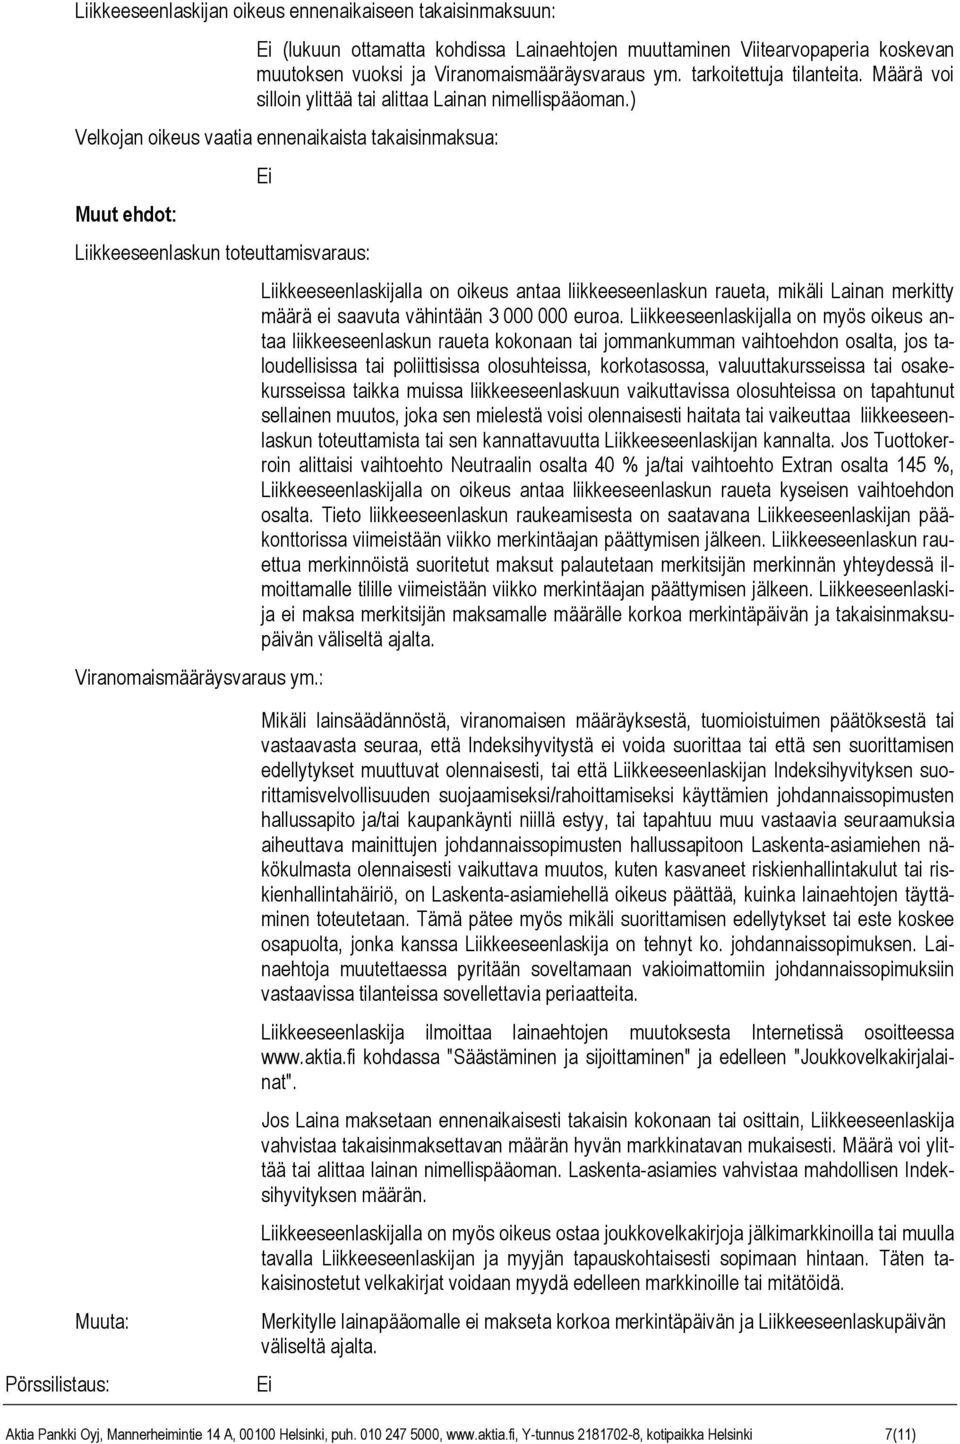 ) Velkojan oikeus vaatia ennenaikaista takaisinmaksua: Muut ehdot: Ei Liikkeeseenlaskun toteuttamisvaraus: Viranomaismääräysvaraus ym.